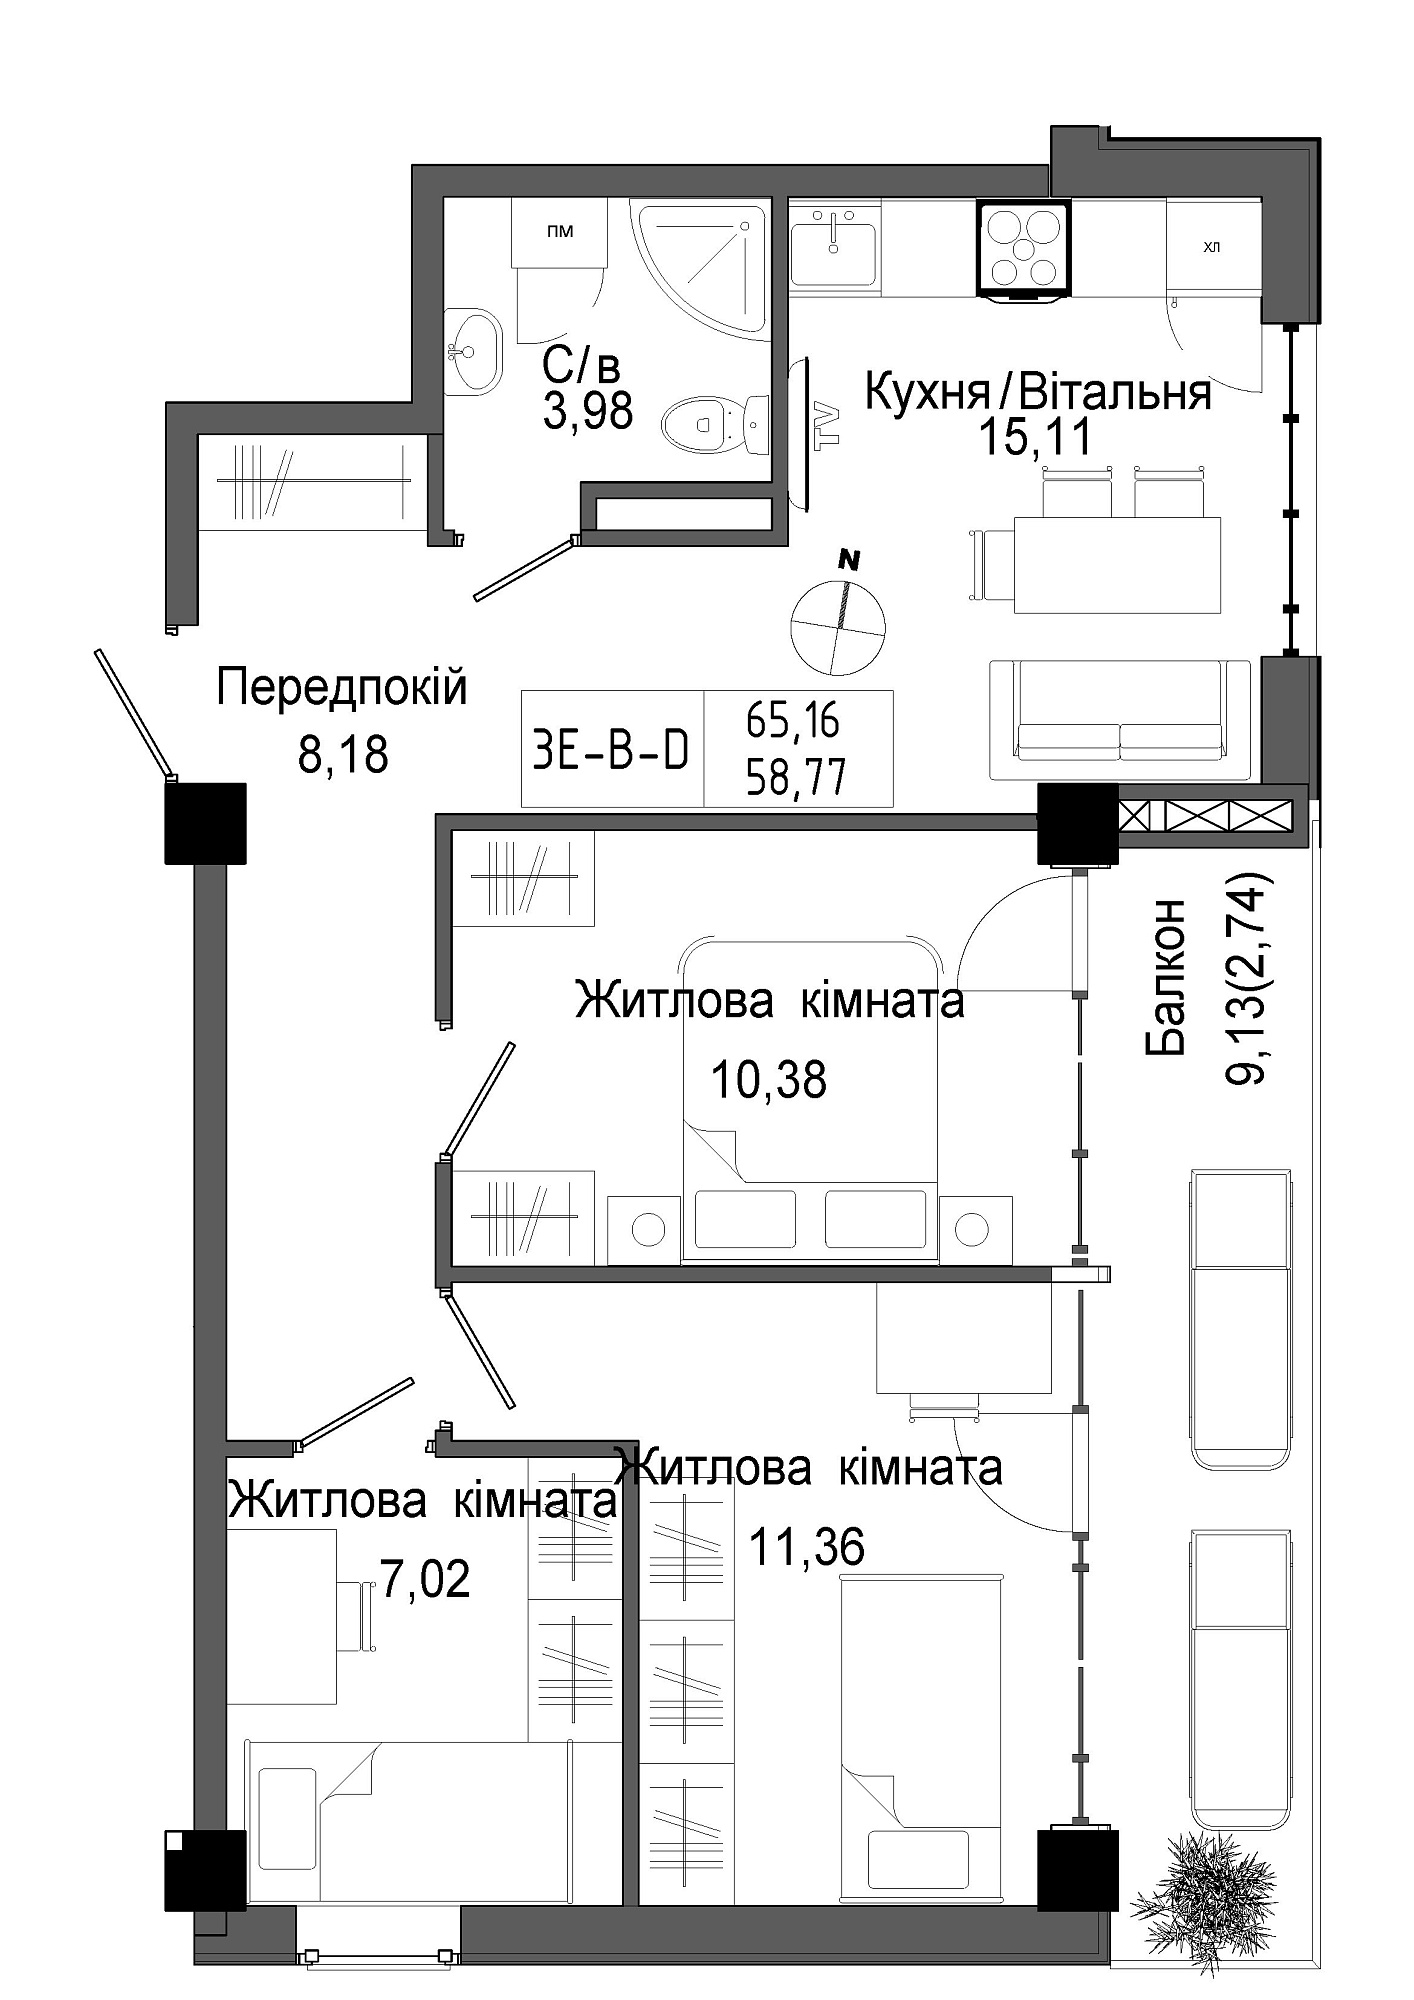 Планировка 3-к квартира площей 58.77м2, UM-006-09/0004.